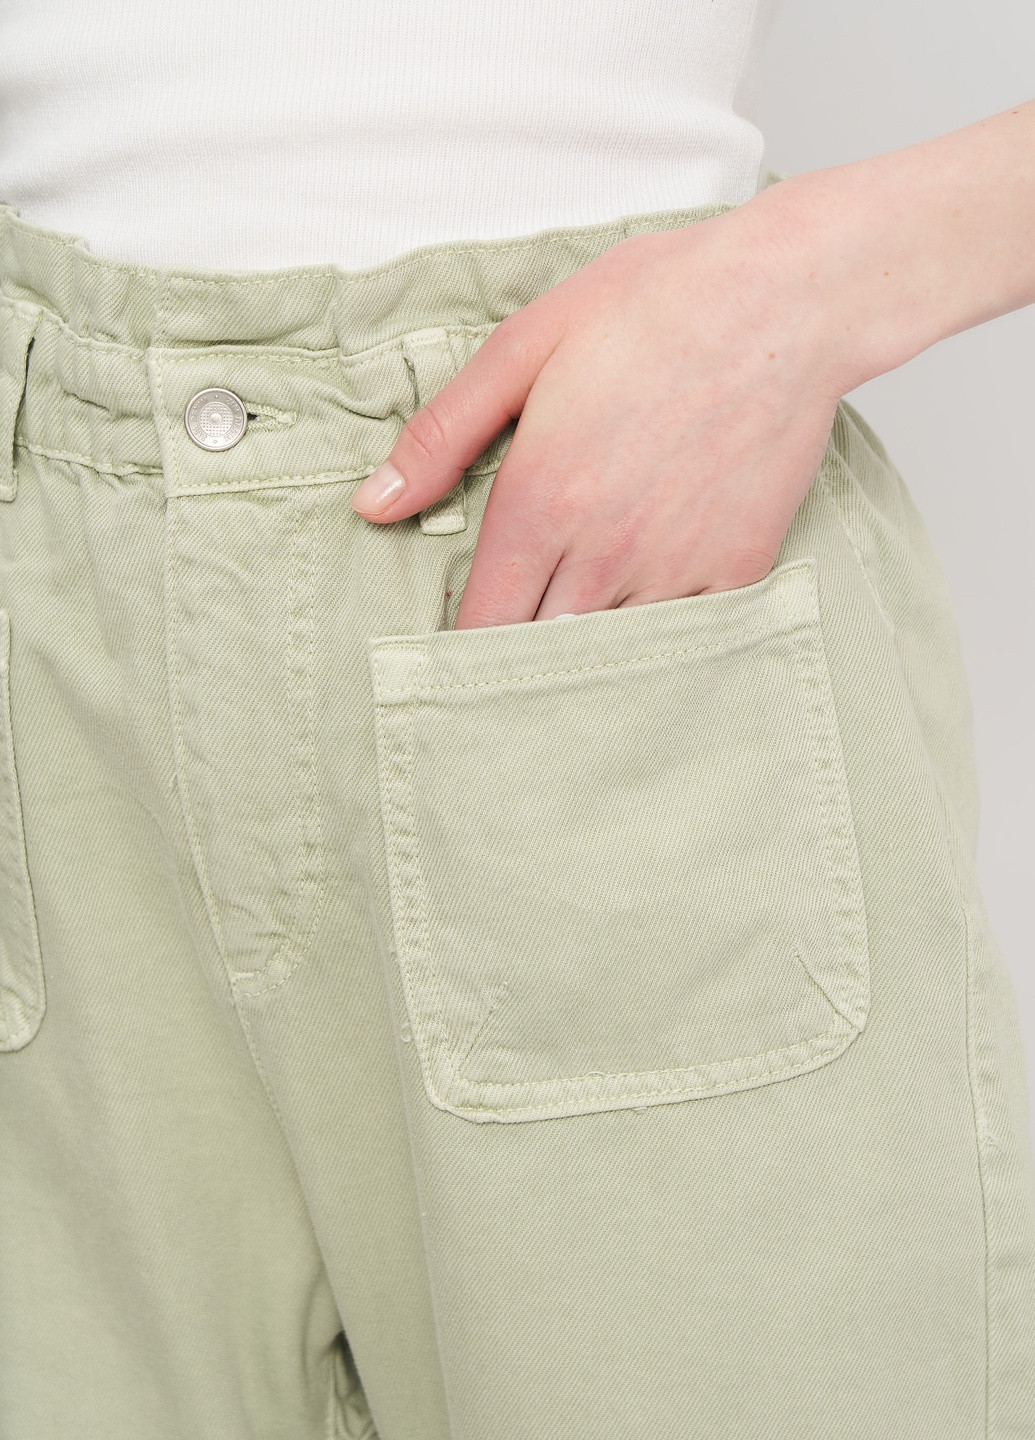 Мятные джинсовые демисезонные брюки Zara